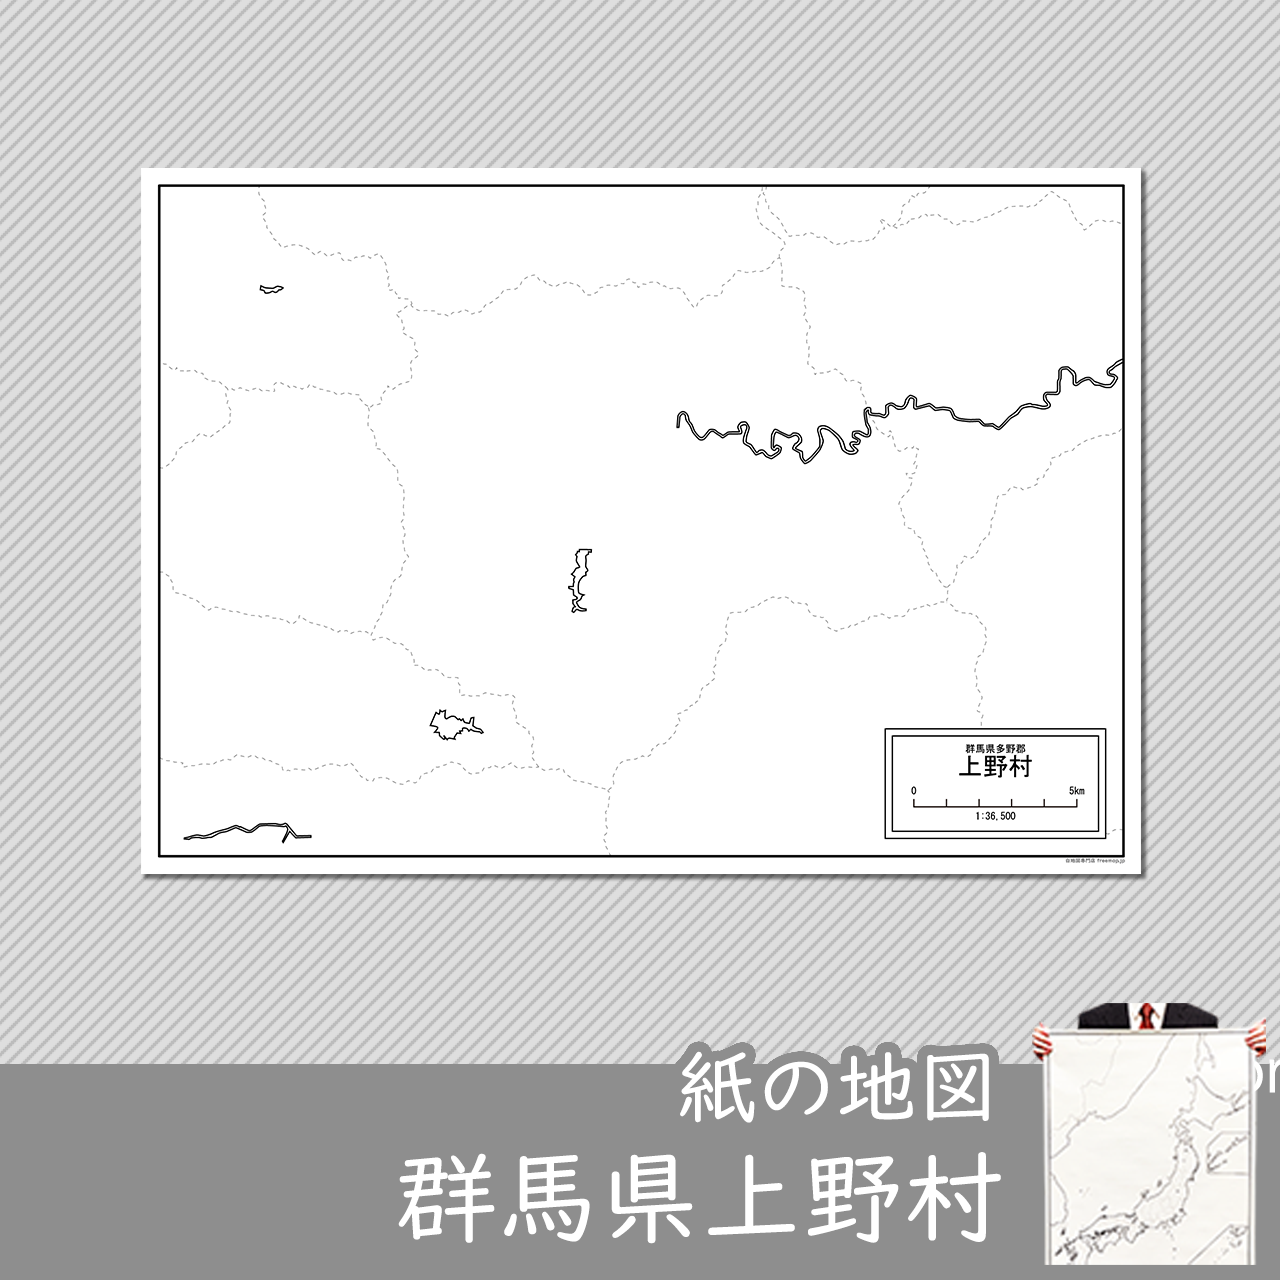 上野村の紙の白地図のサムネイル